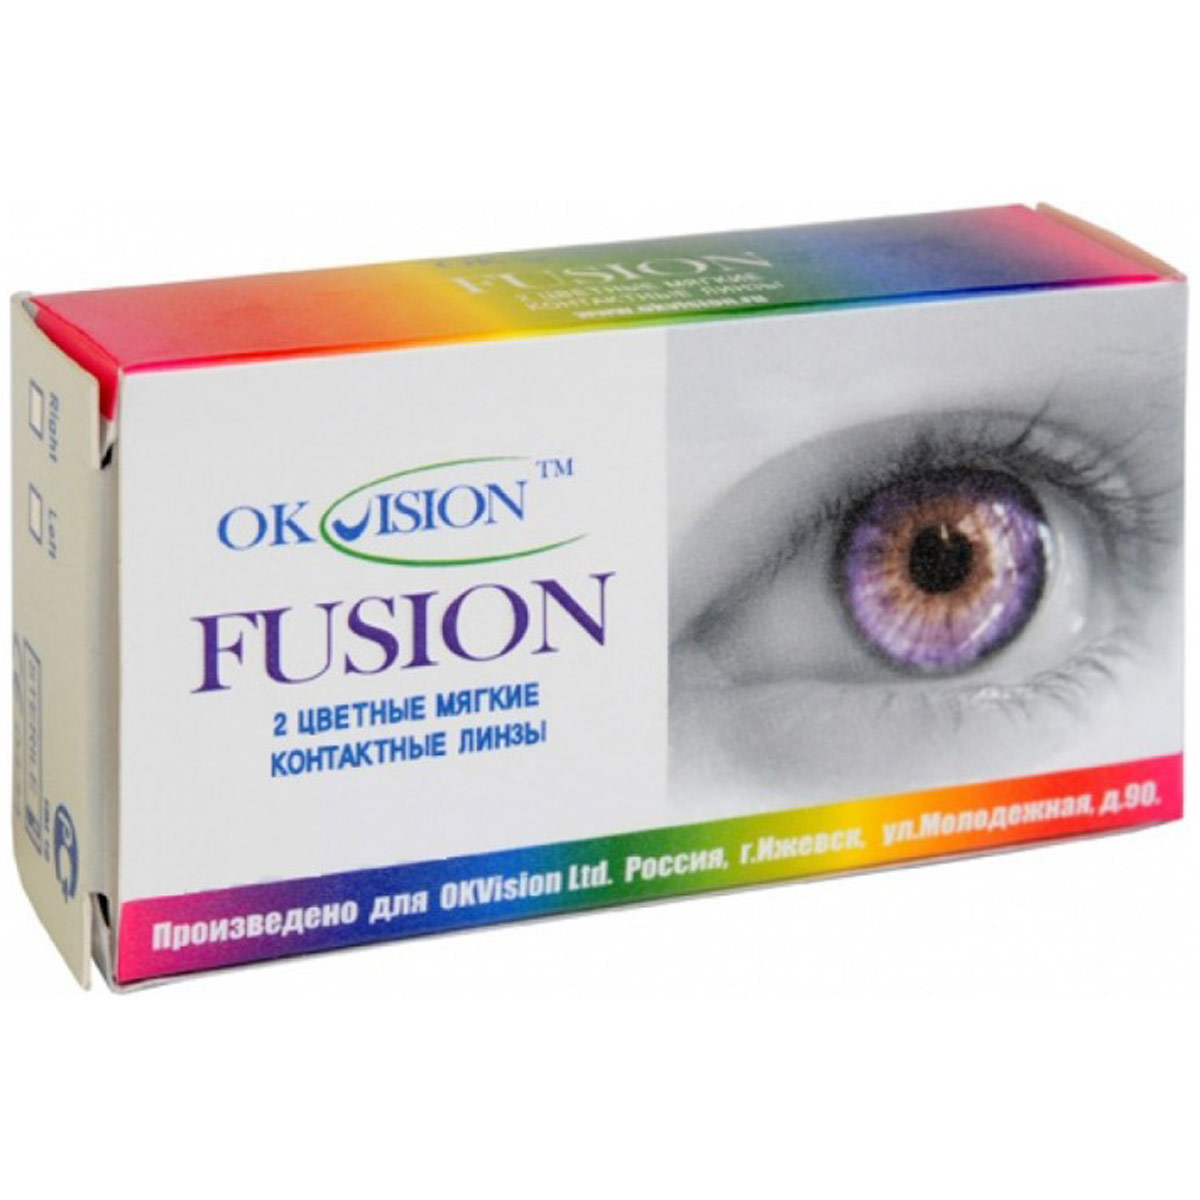 Сколько стоит ночные линзы для восстановления зрения. Контактные линзы. Контактные линзы для зрения. Ночные контактные линзы. Линзы цветные для глаз в упаковке.